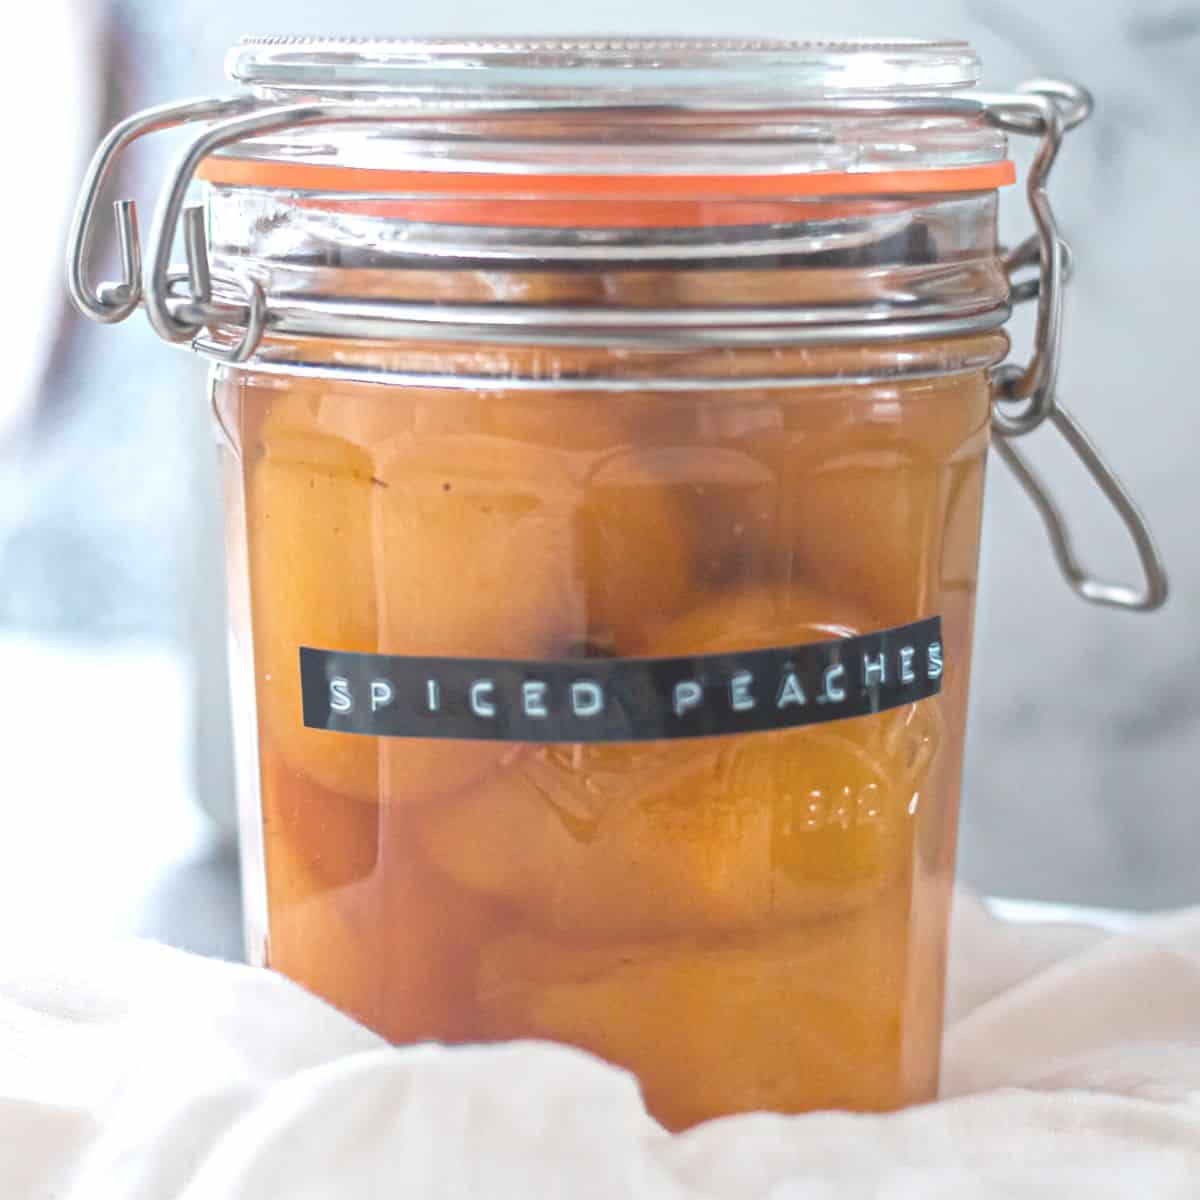 Spiced Peaches – A delicious edible gift